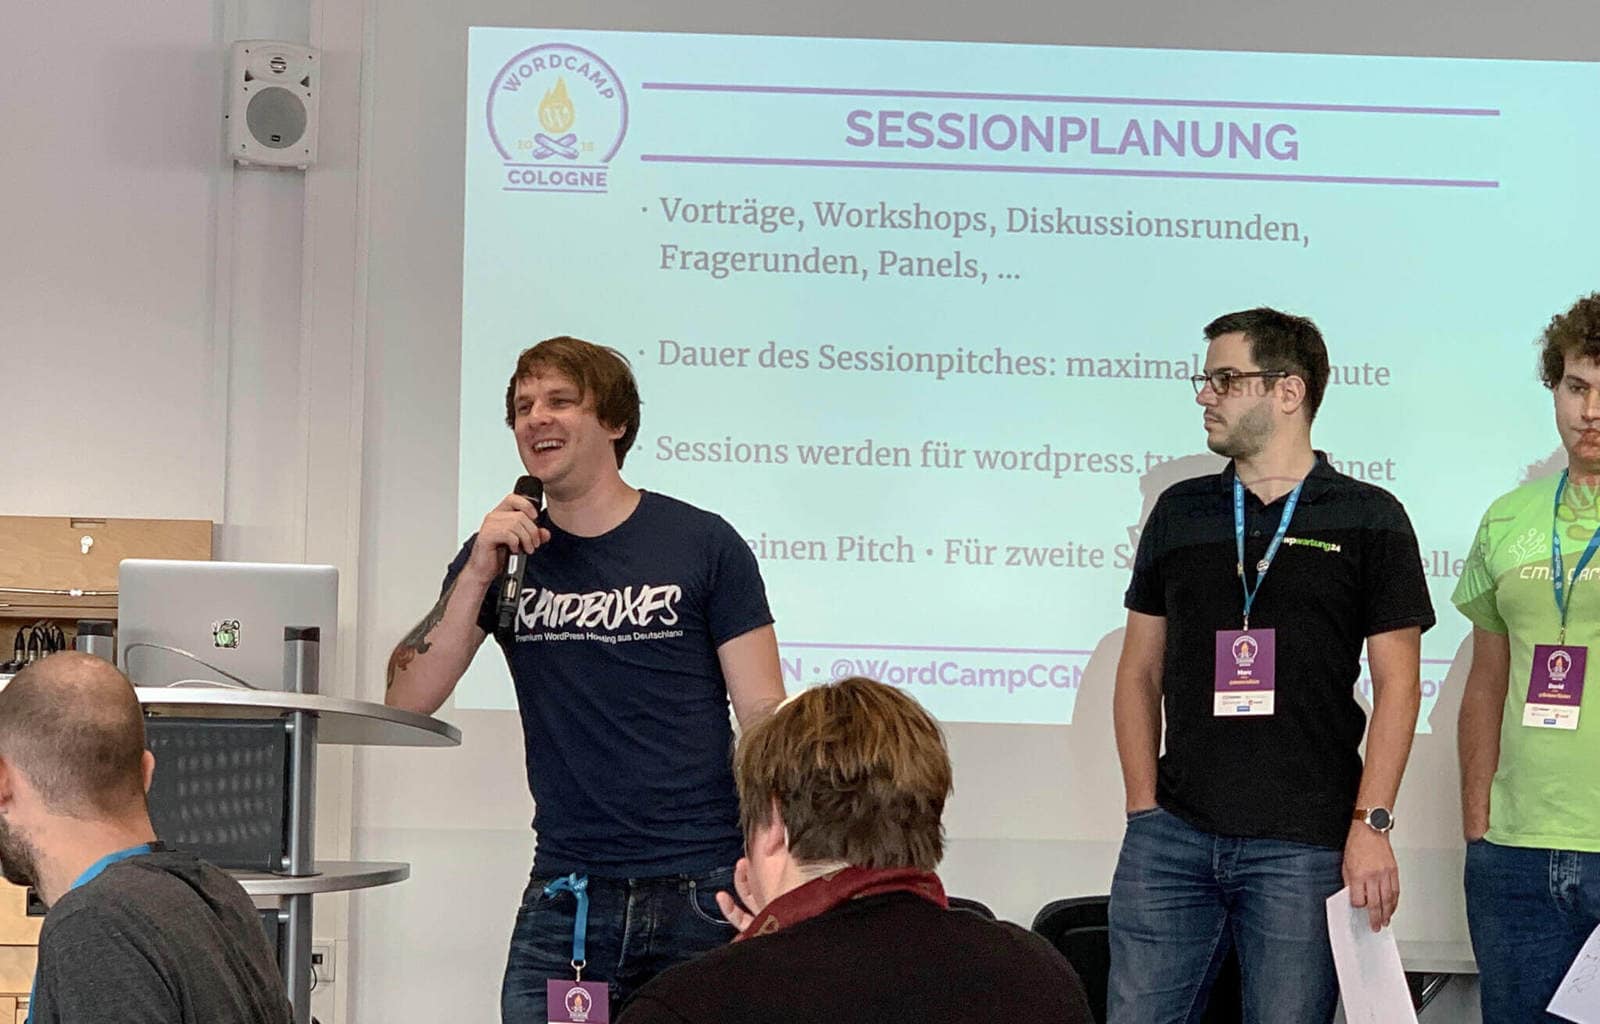 WordCamp Cologne : Matthias von Raidboxes lors du pitch de la session